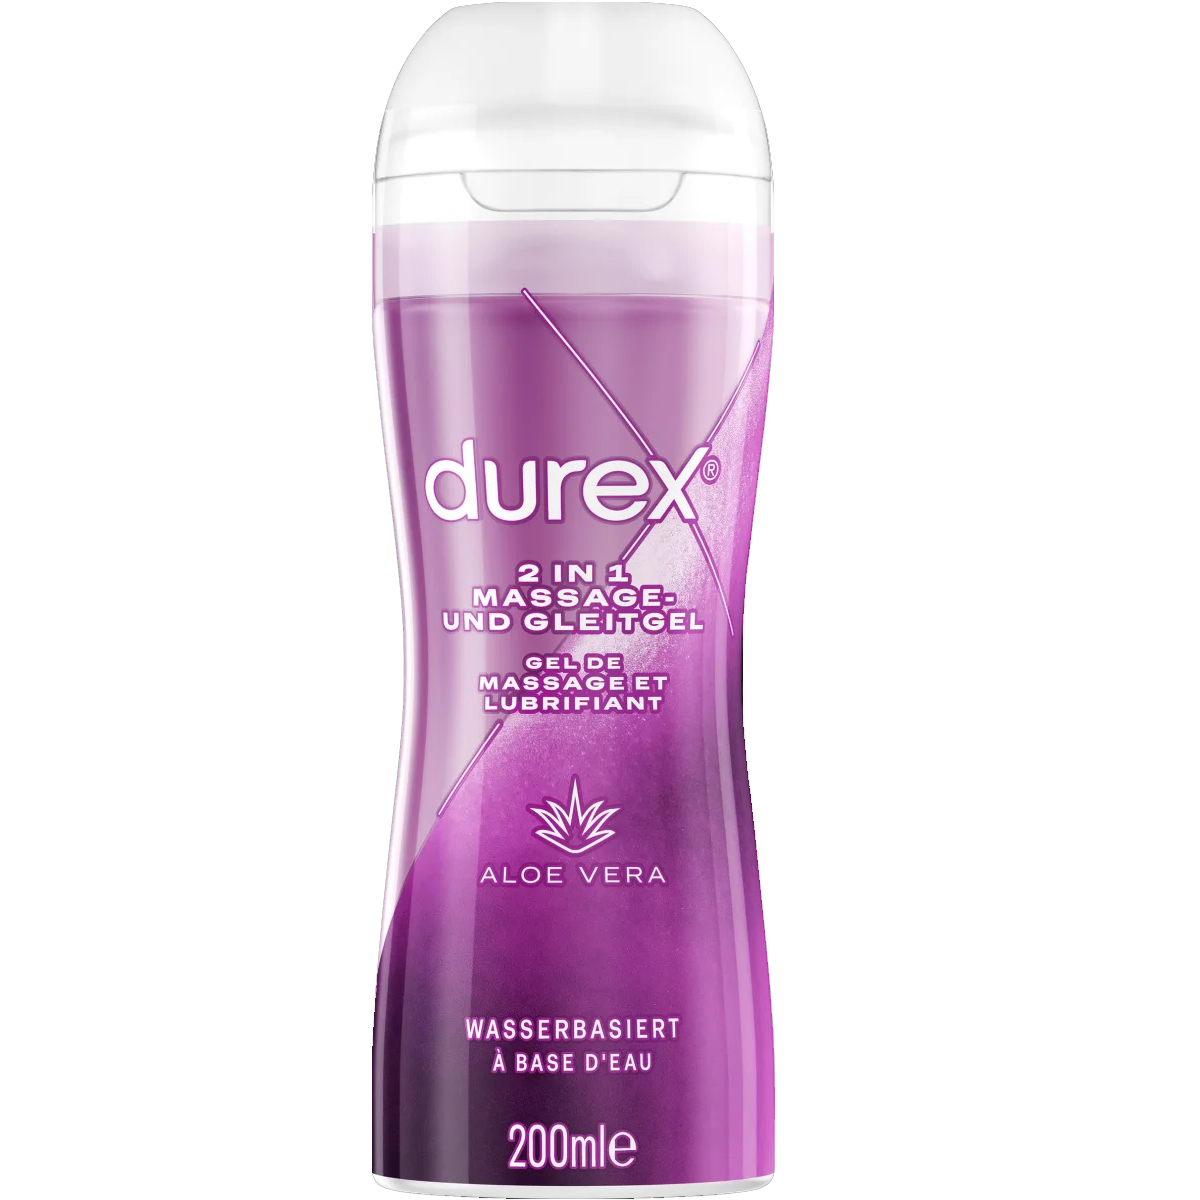 Durex Play Aloe Vera 200ml - Pflege & Genuss (aus der Kondomotheke